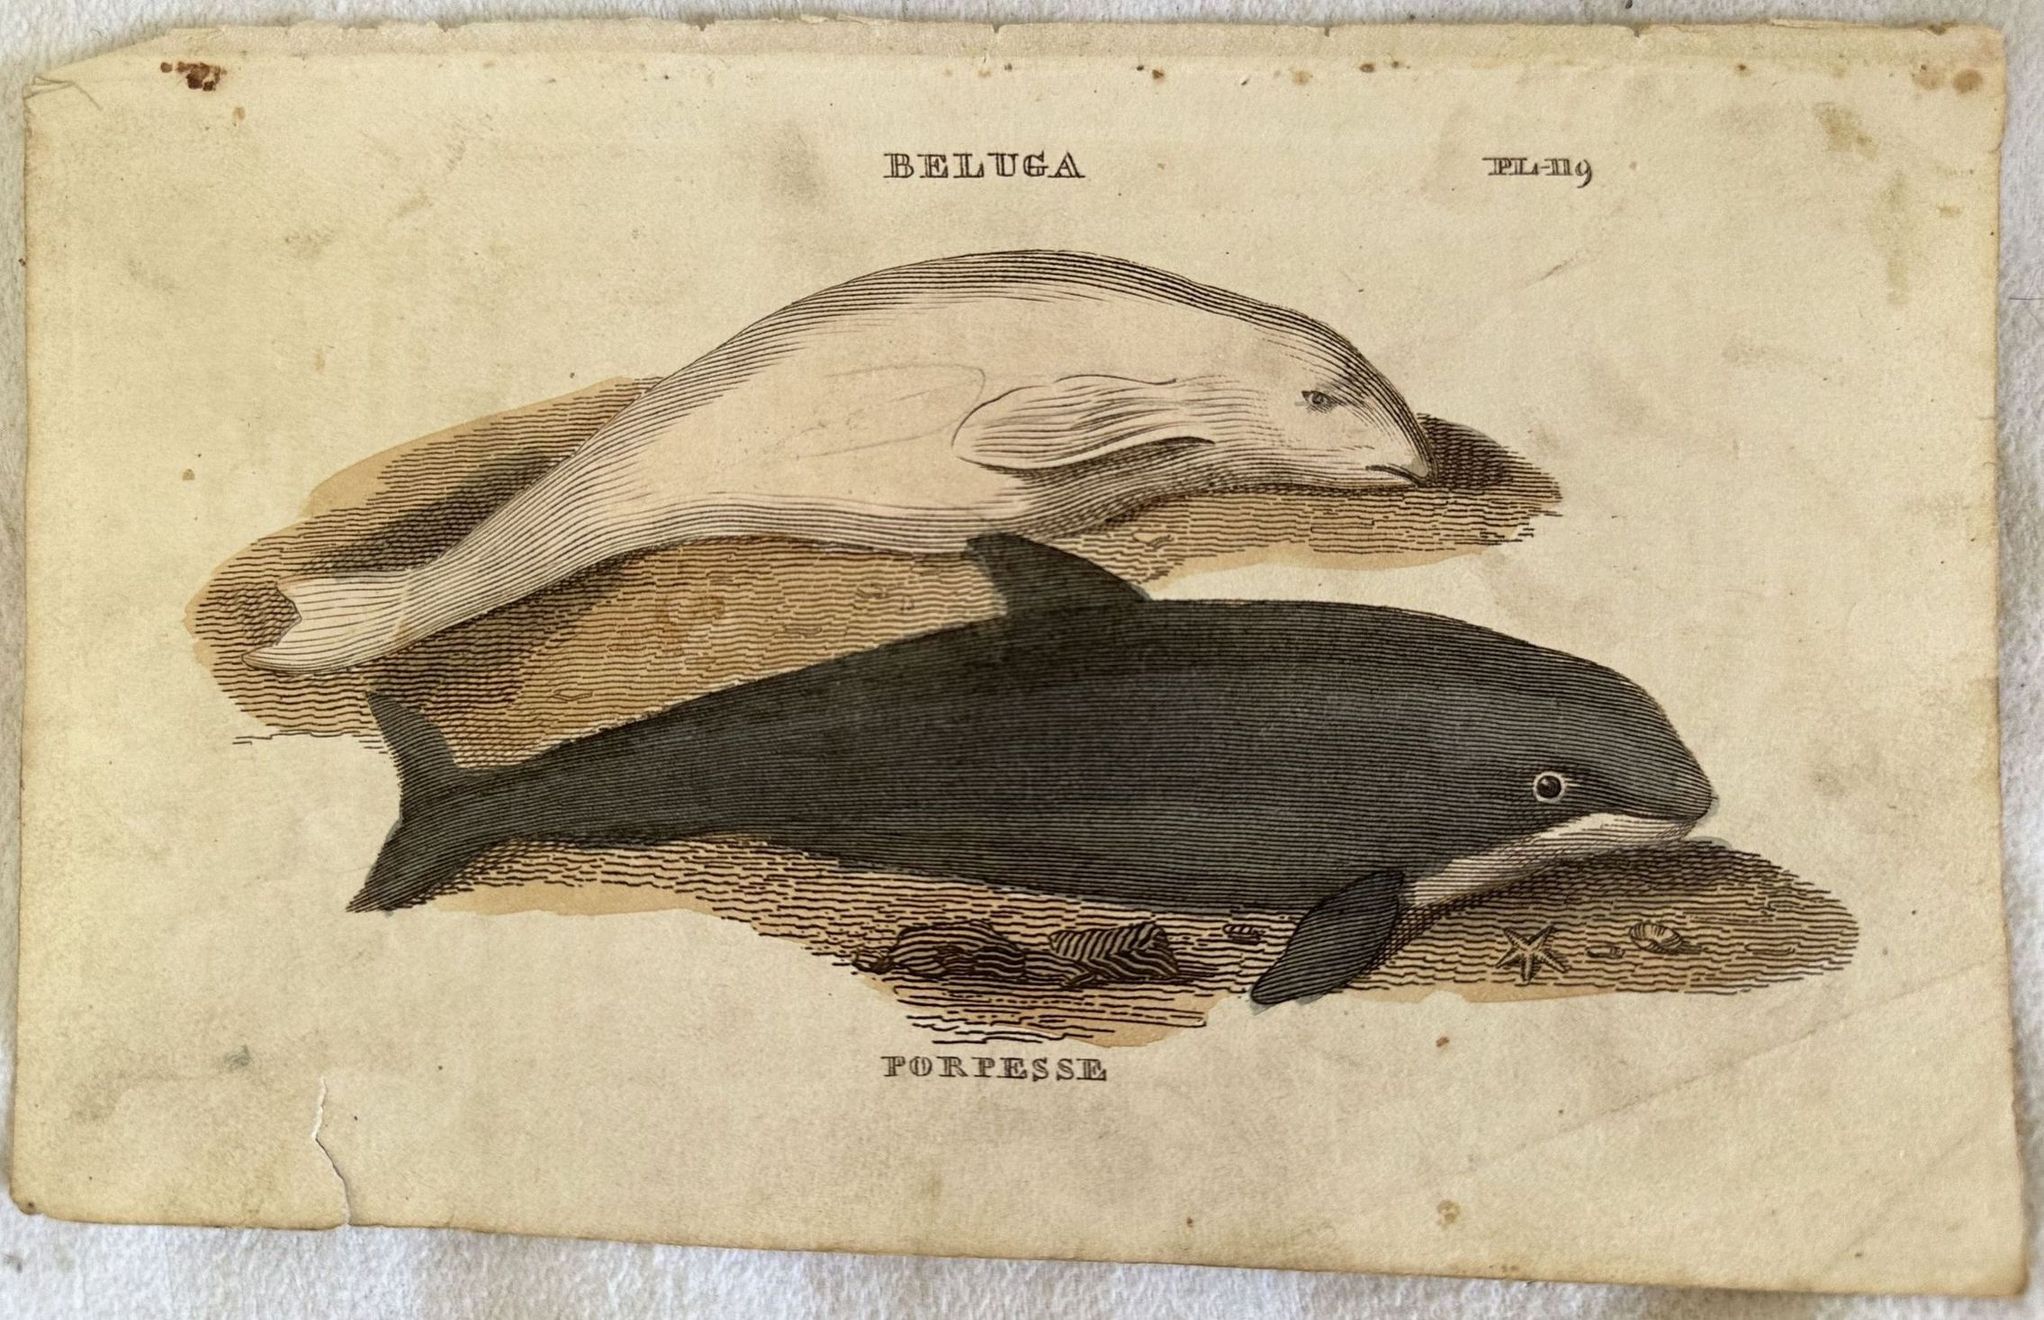 BELUGA (beluga) PORPESSE (orca)